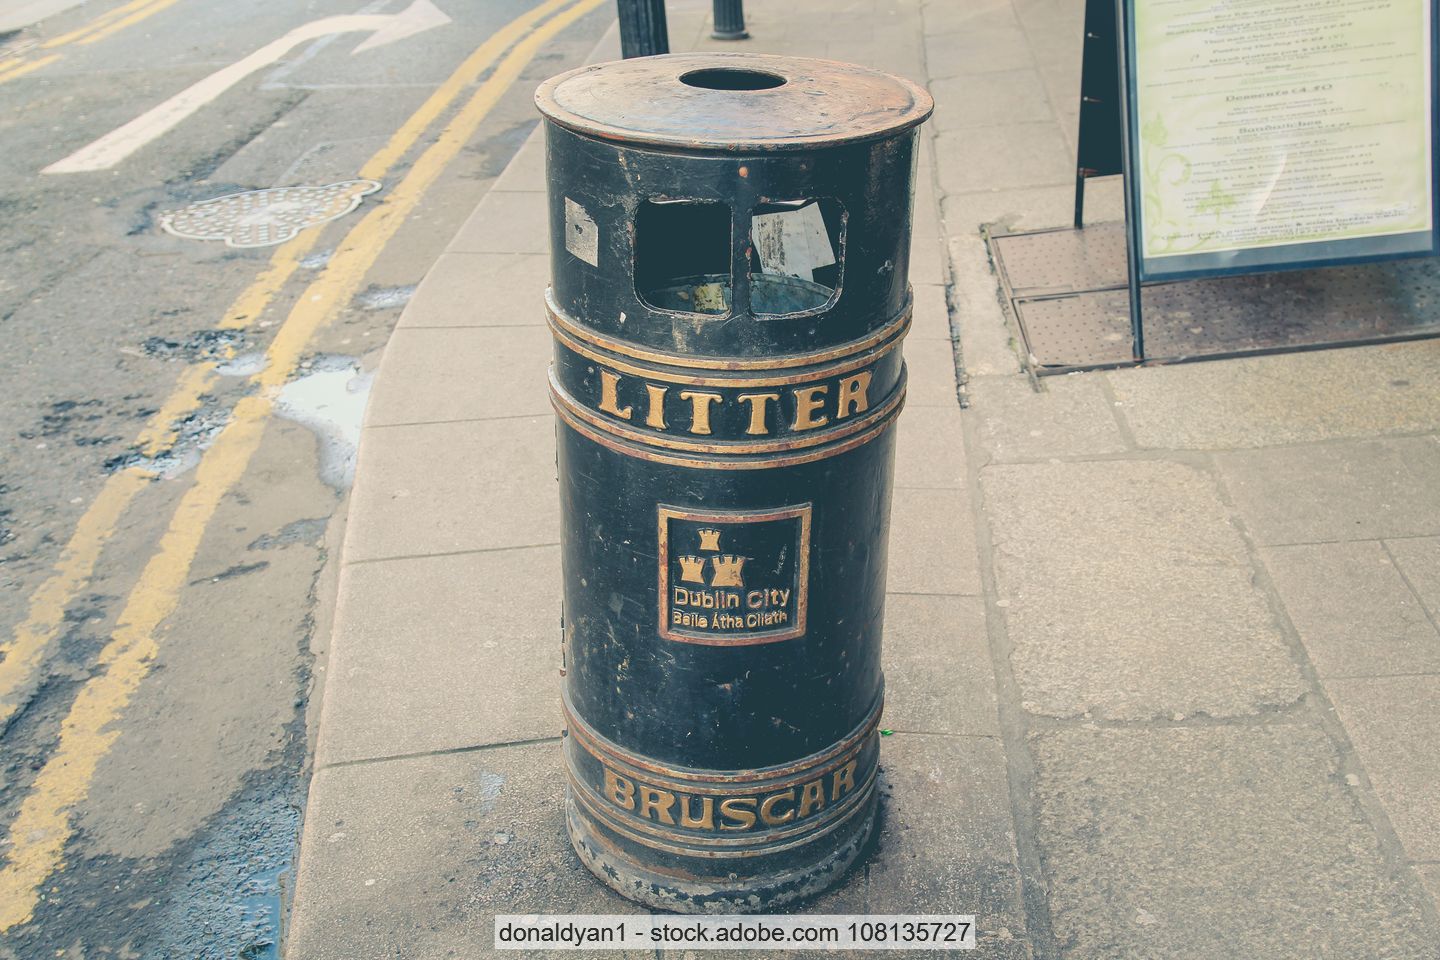 Waste bin on a pavement in Dublin